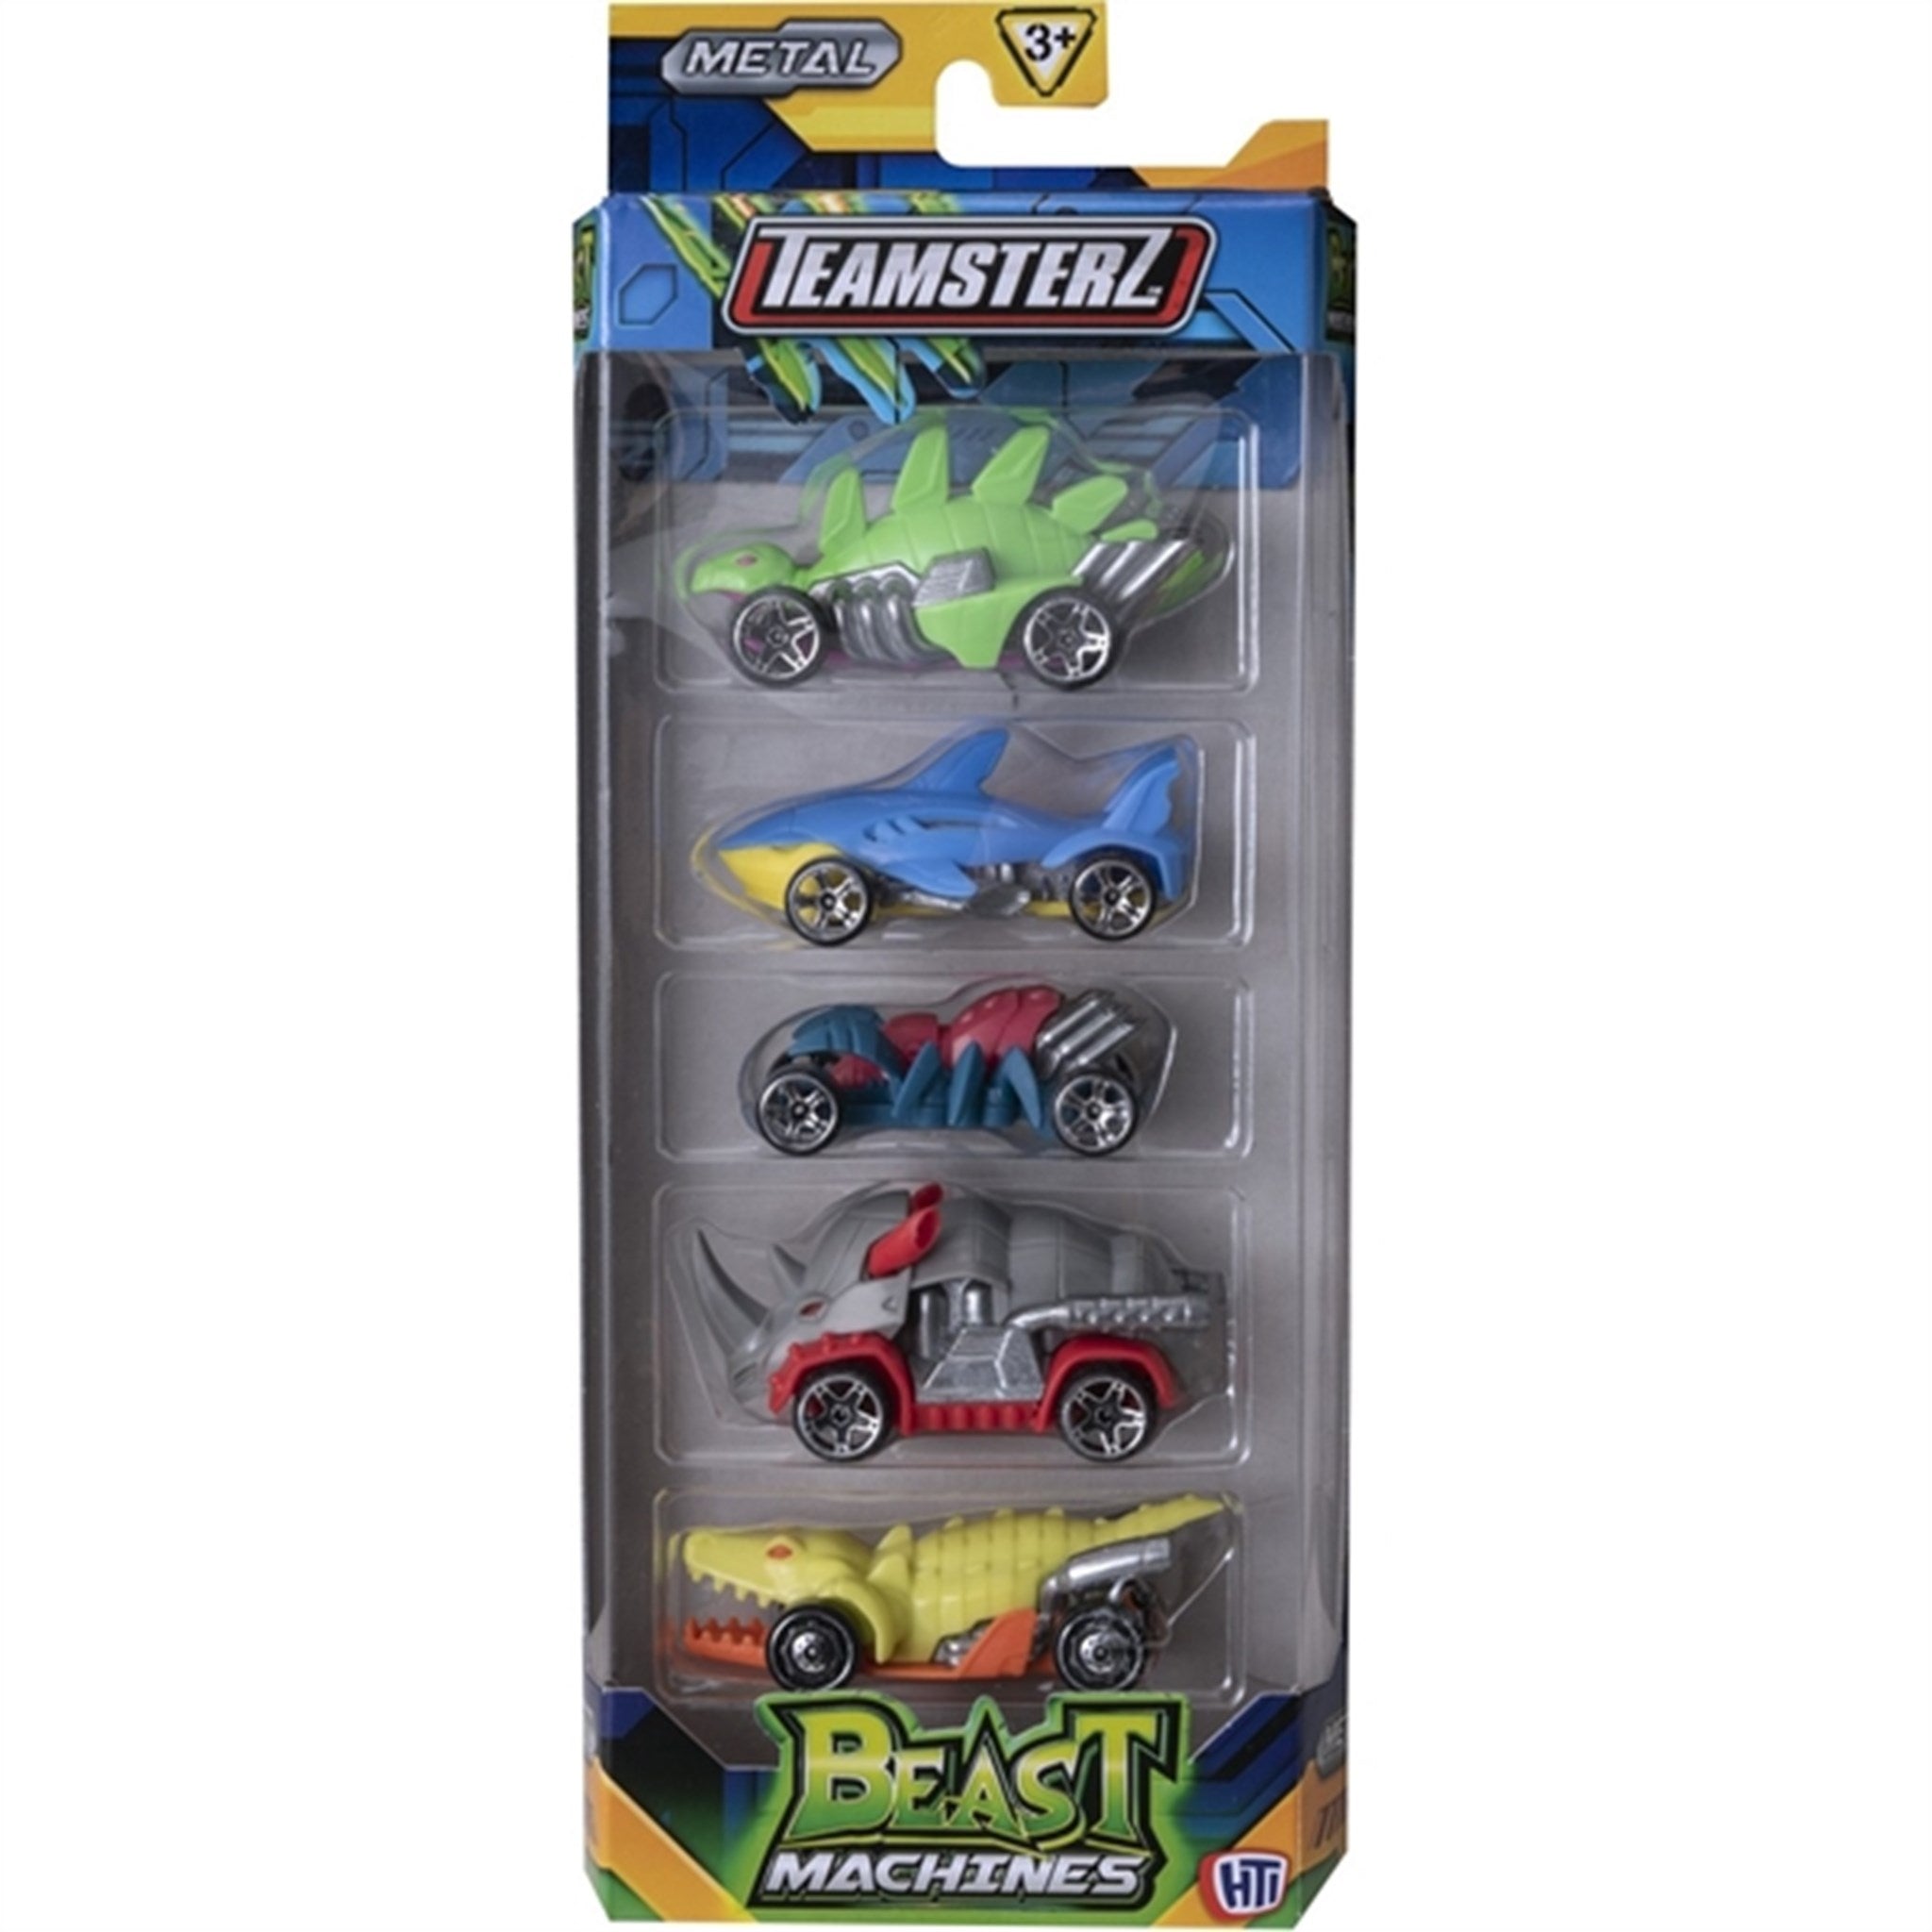 Teamsterz Beast Machine Die-Cast Cars 5-pack - 1